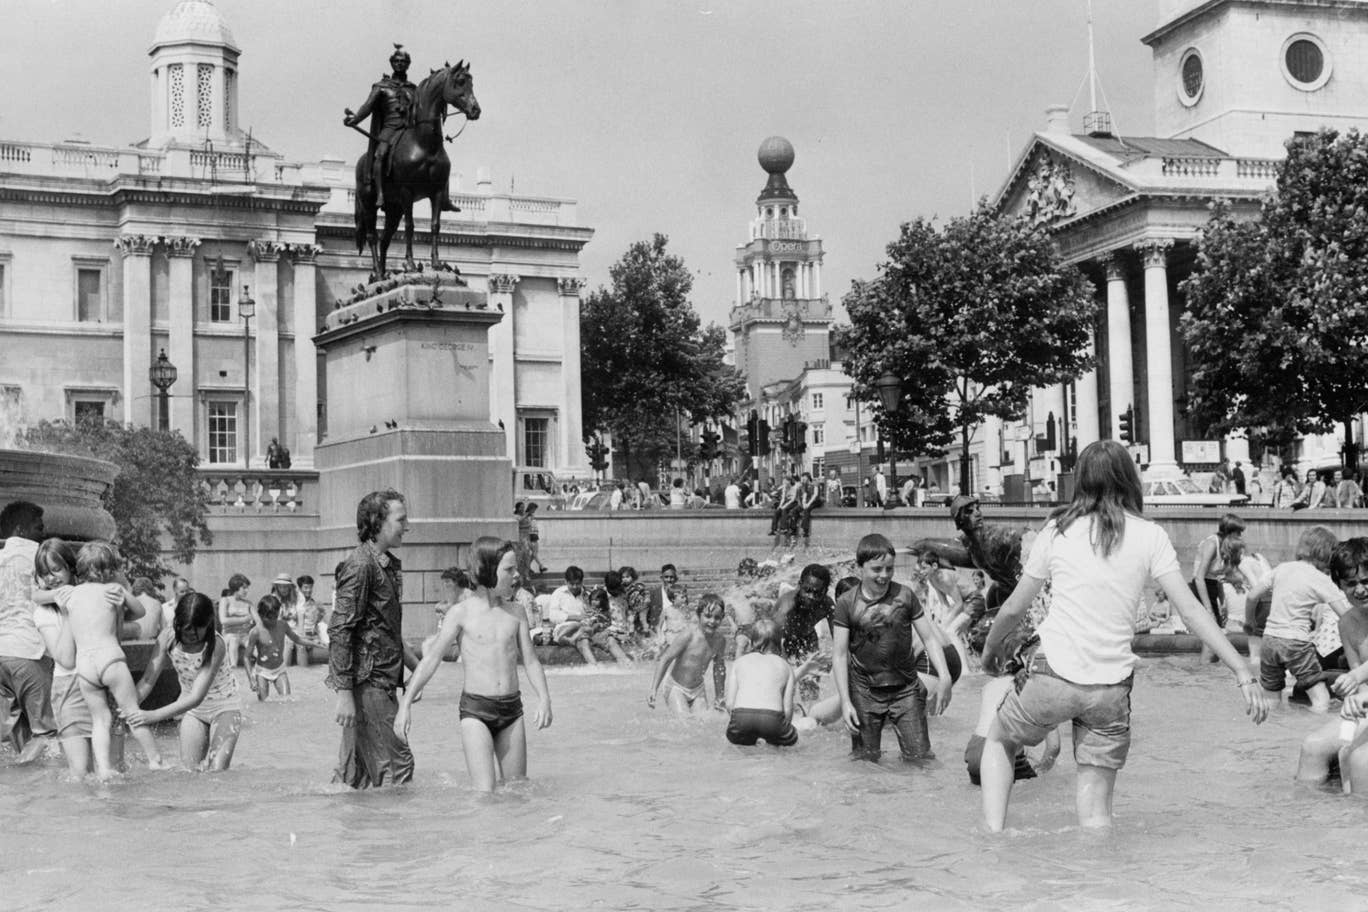 Az emberek élvezik a hűvös vizet a Trafalgar tér szökőkútjain